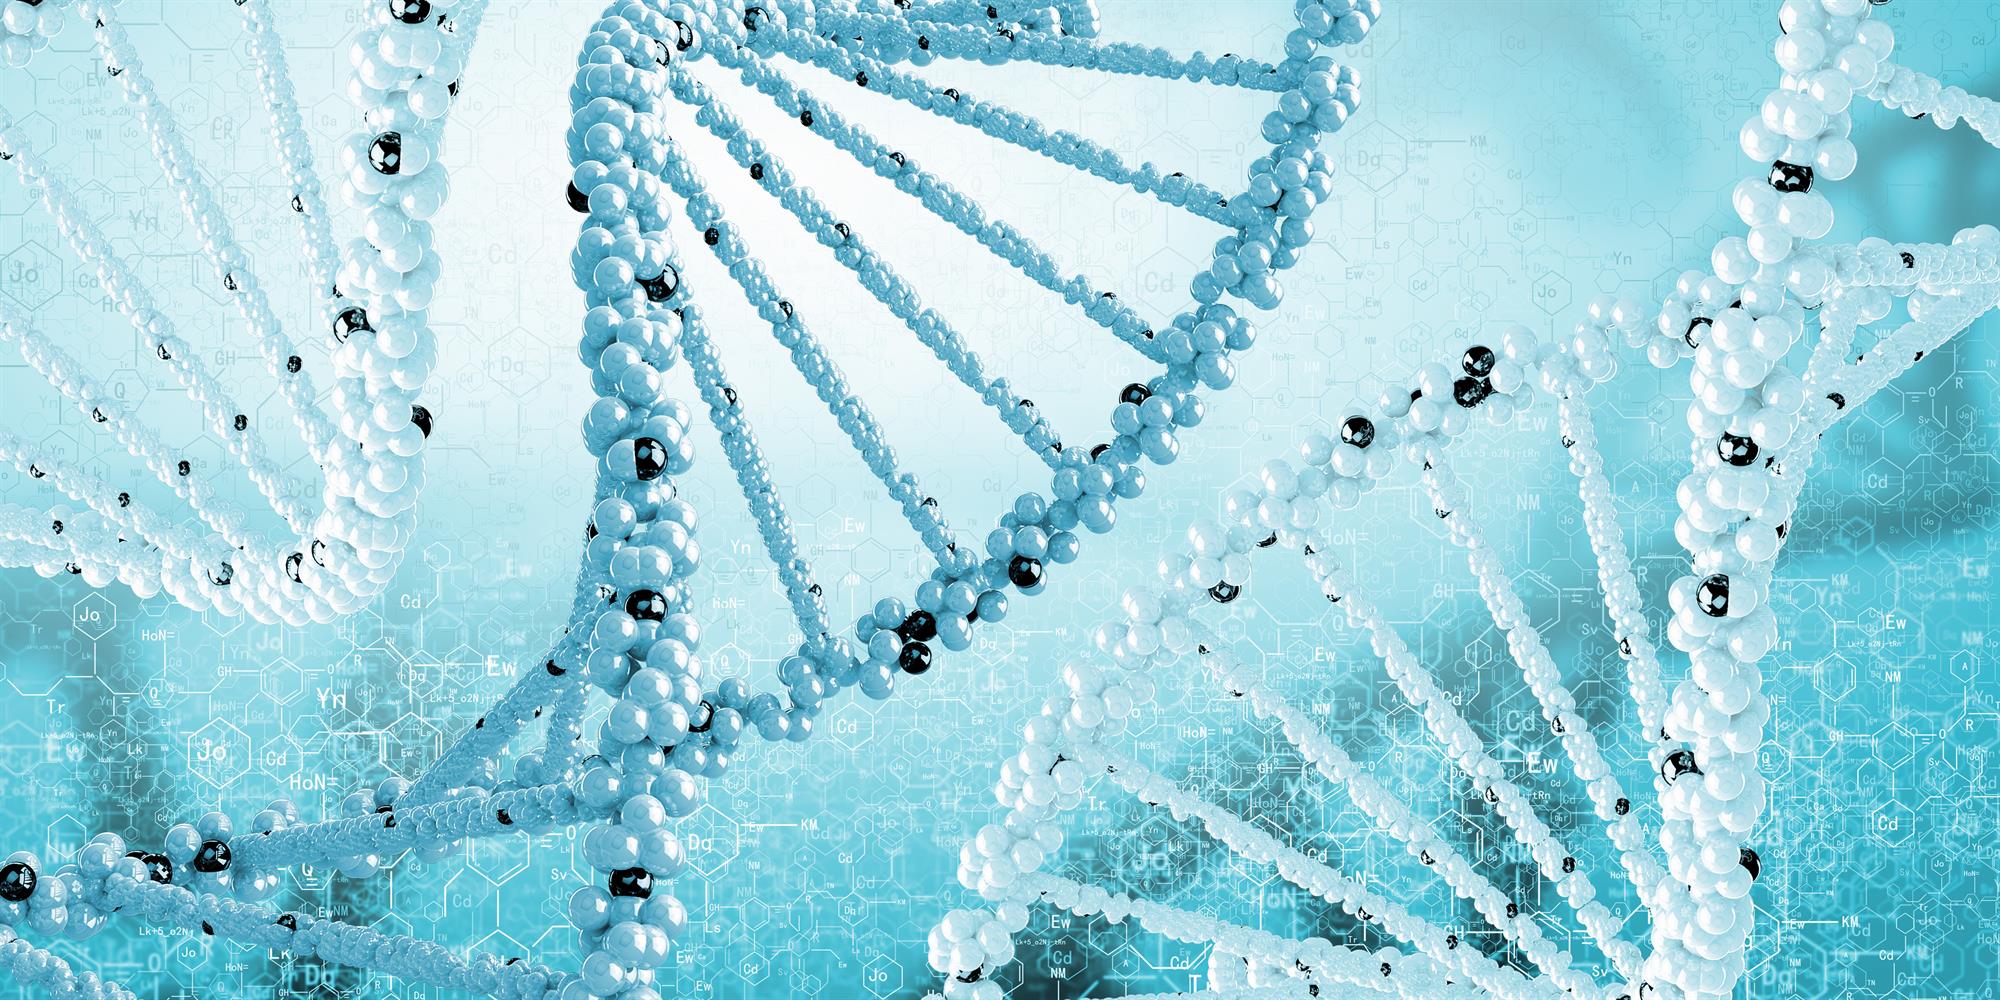 ساختار DNA 